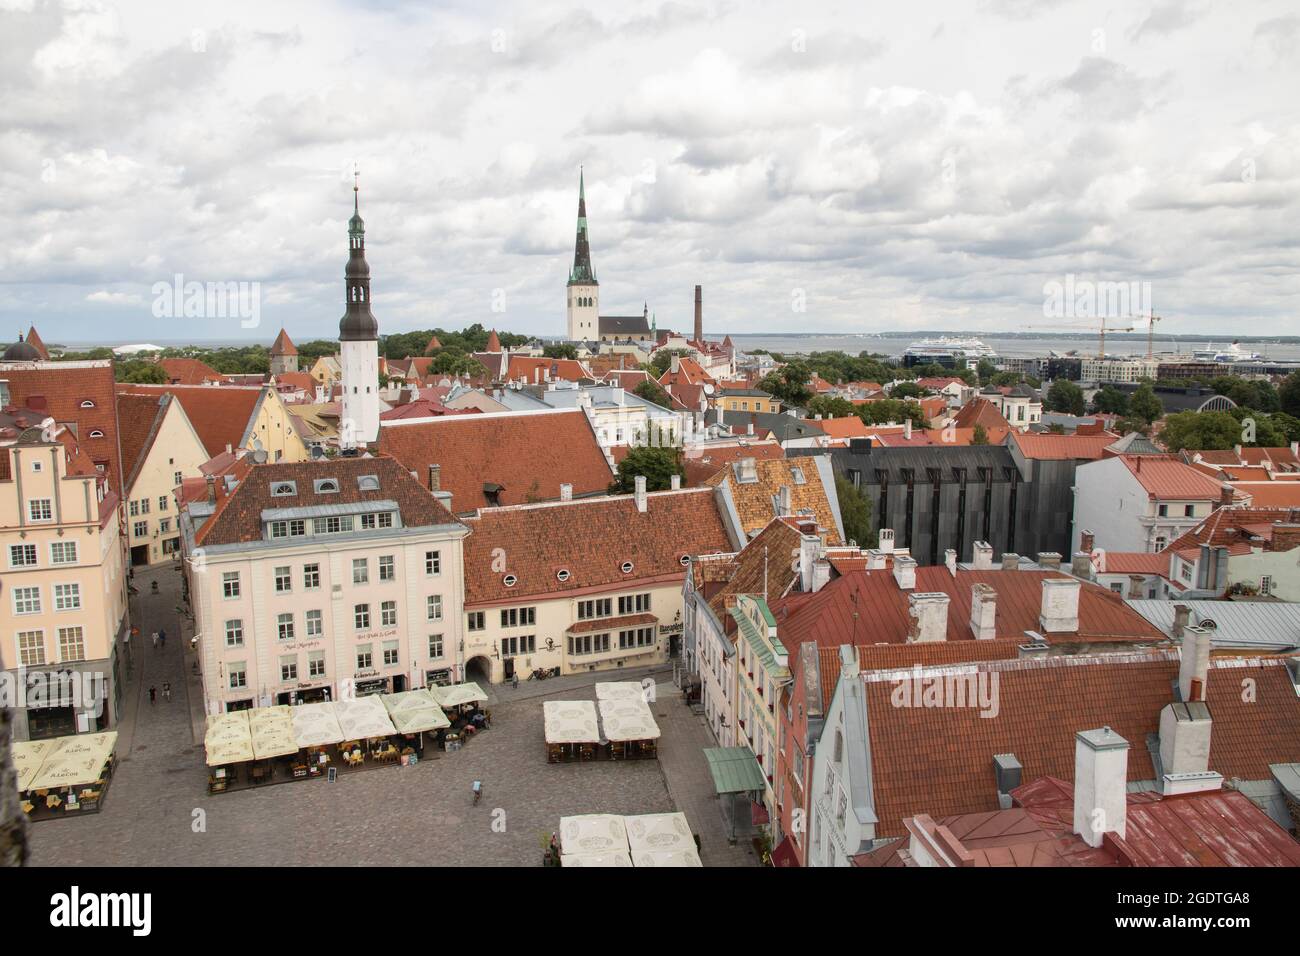 Tallinn old town, Estonia Stock Photo